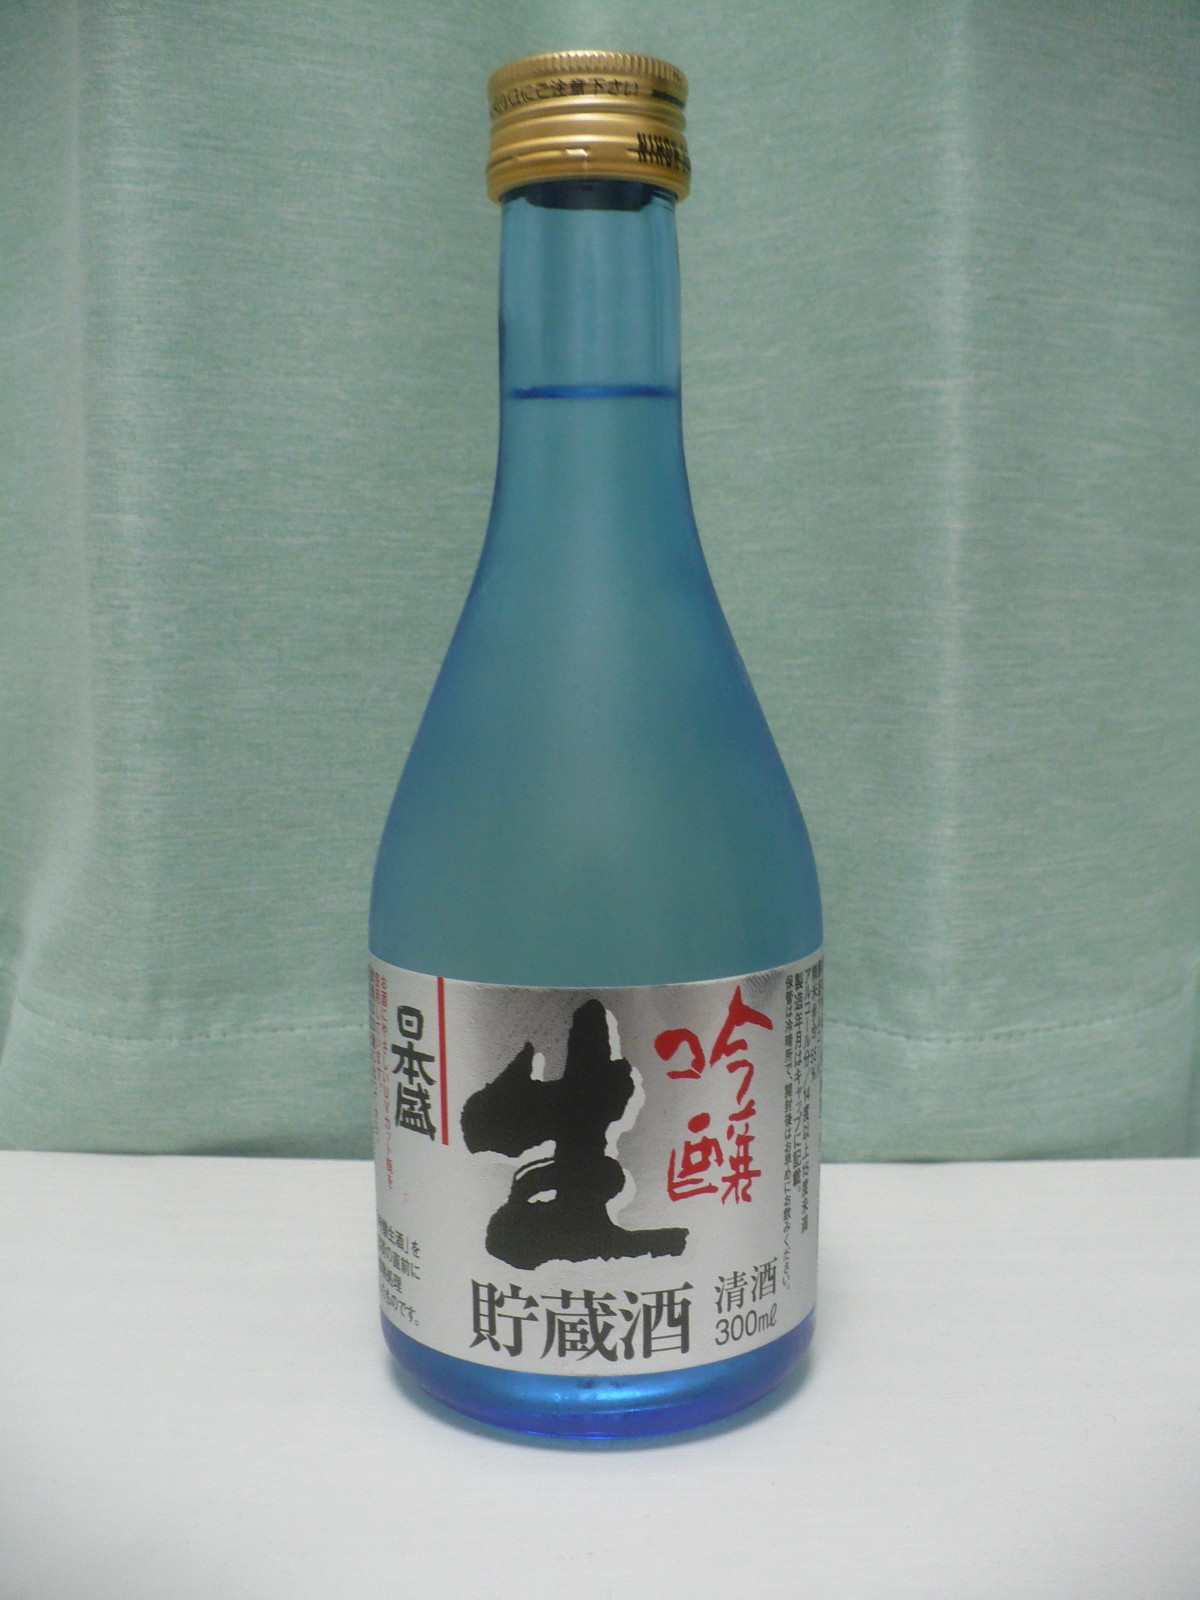 日本盛の吟醸生貯蔵酒と肴は刺身と焼き魚 丹醸 スペペ 飲料マニアと雑学帝王